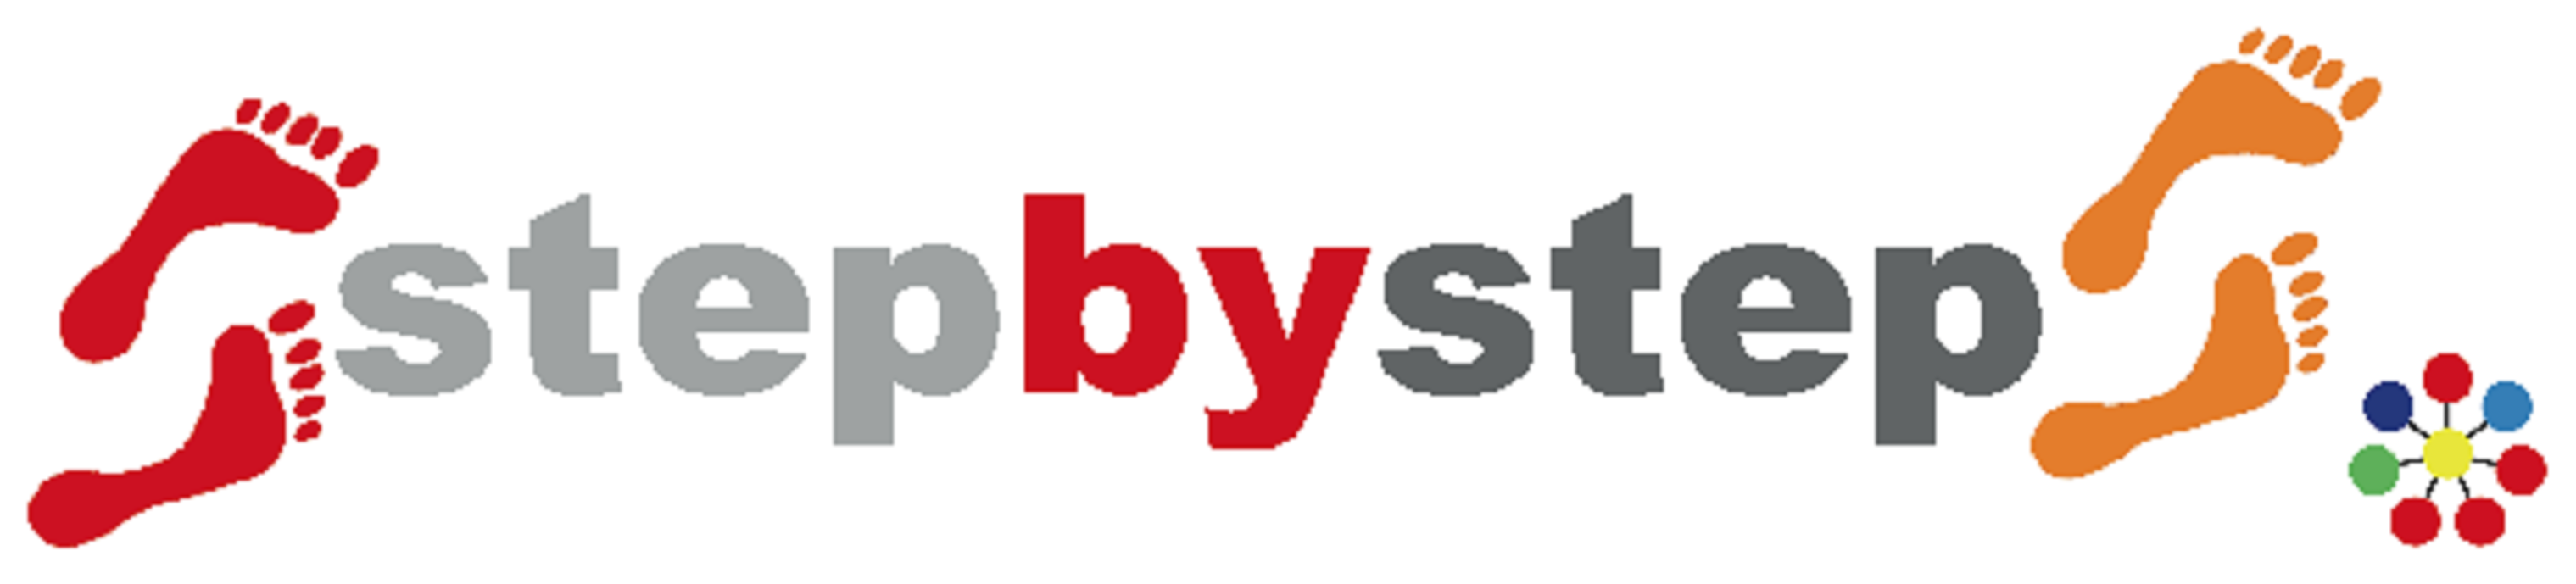 stebbystep-Logo